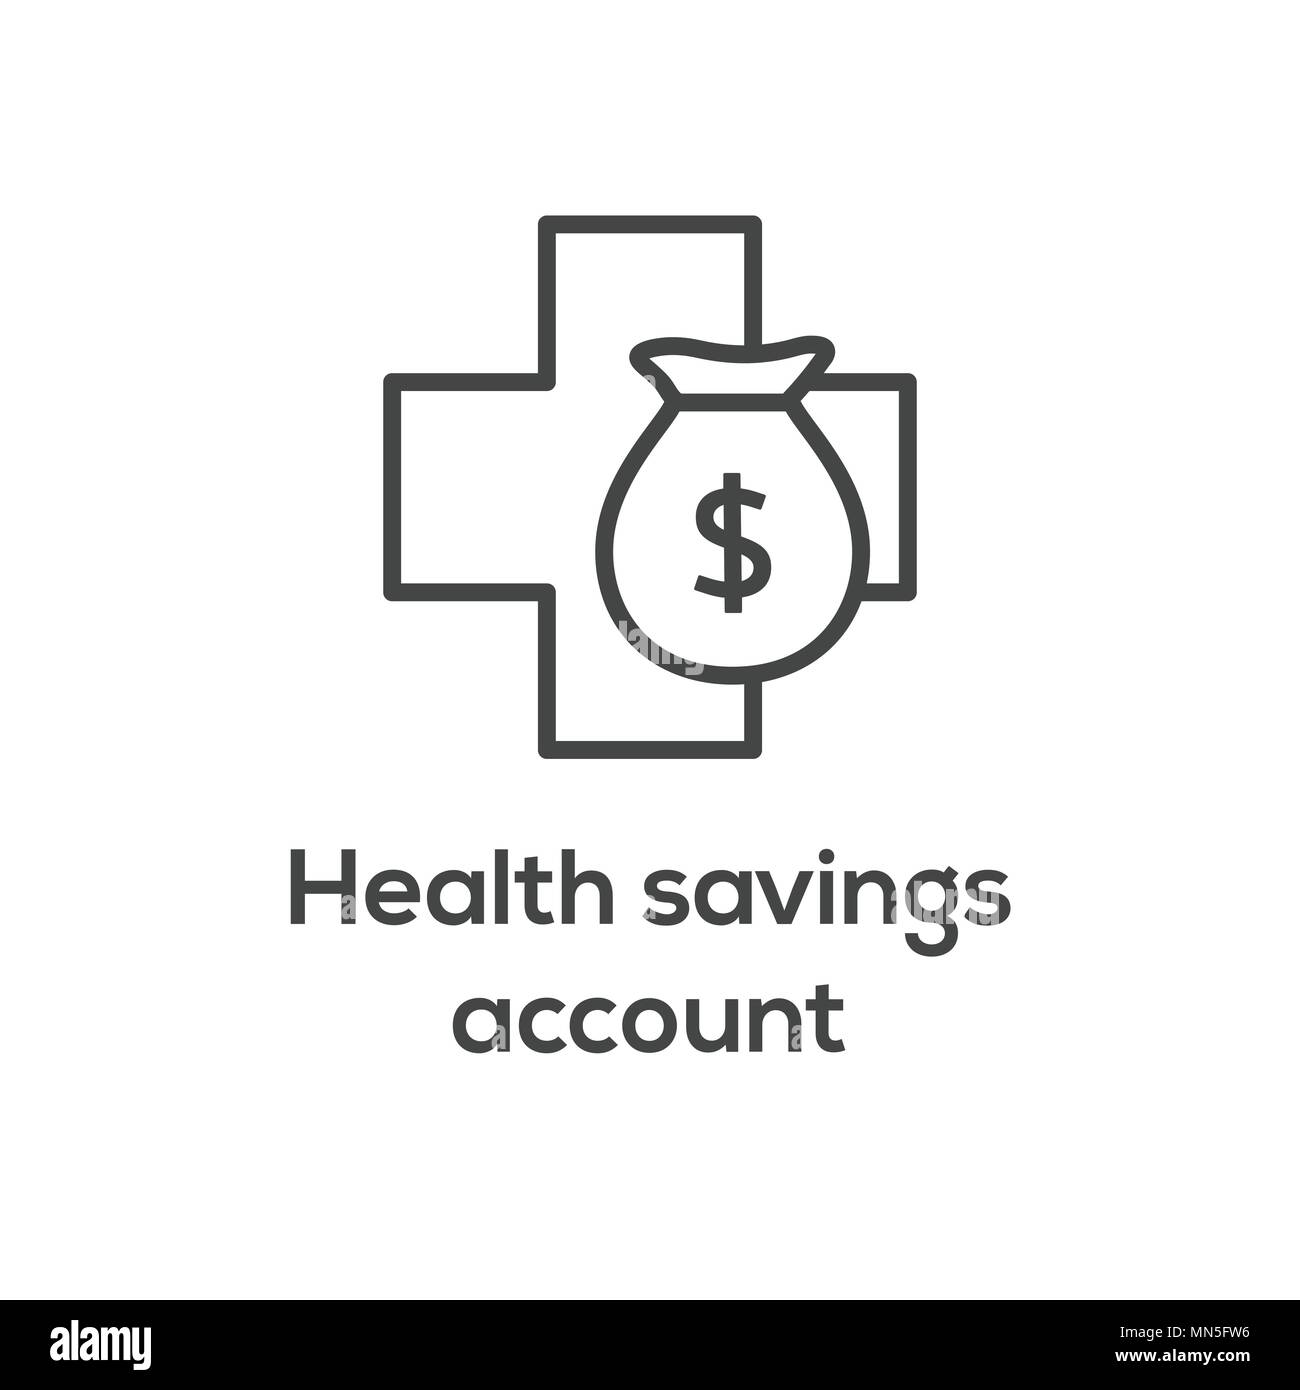 Medical risparmi fiscali w salute conto di risparmio o conto spese flessibile - HSA, FSA tax-al riparo i risparmi Illustrazione Vettoriale